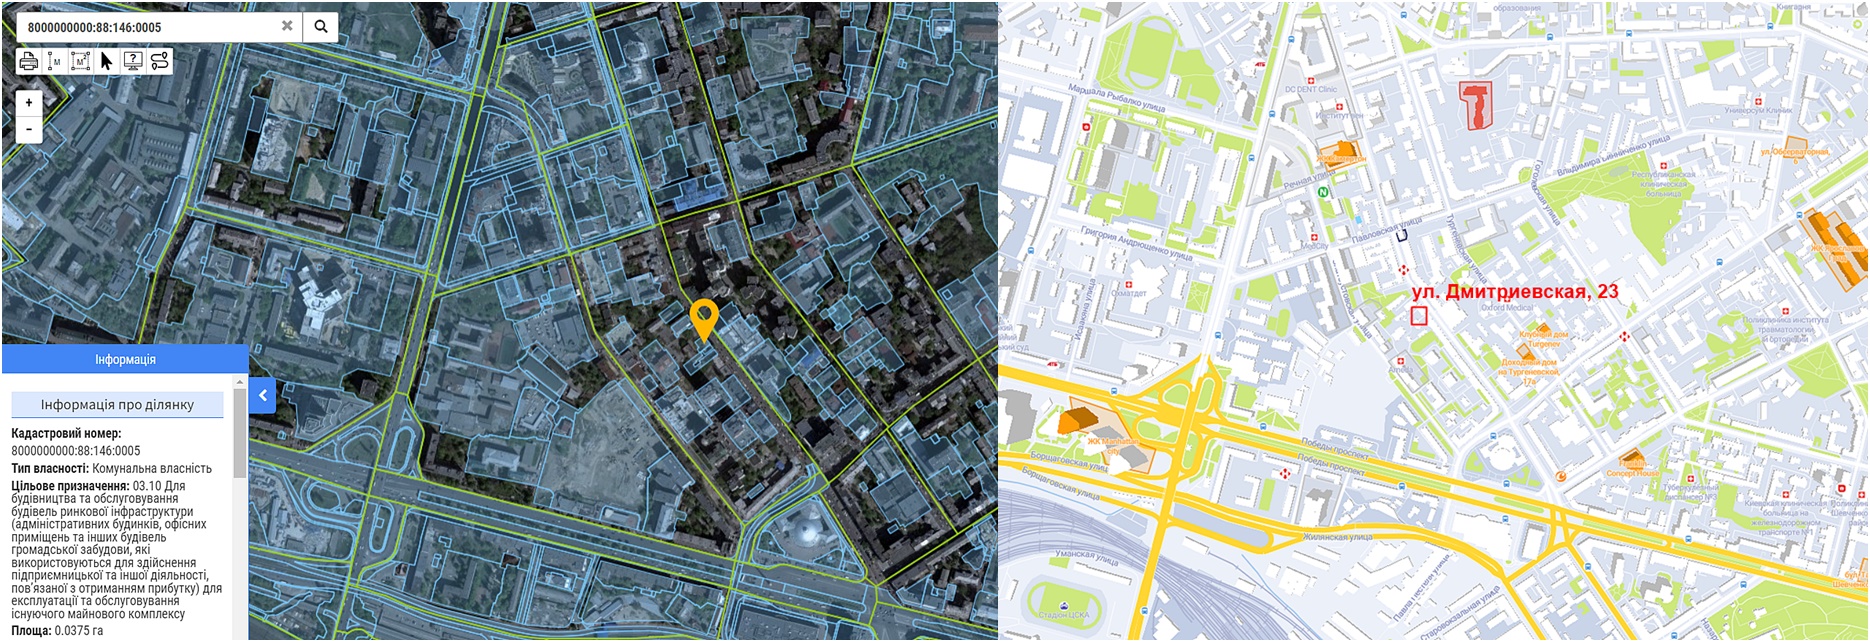 Реконструкция по ул. Дмитриевская, 23 данные кадастра и на карте